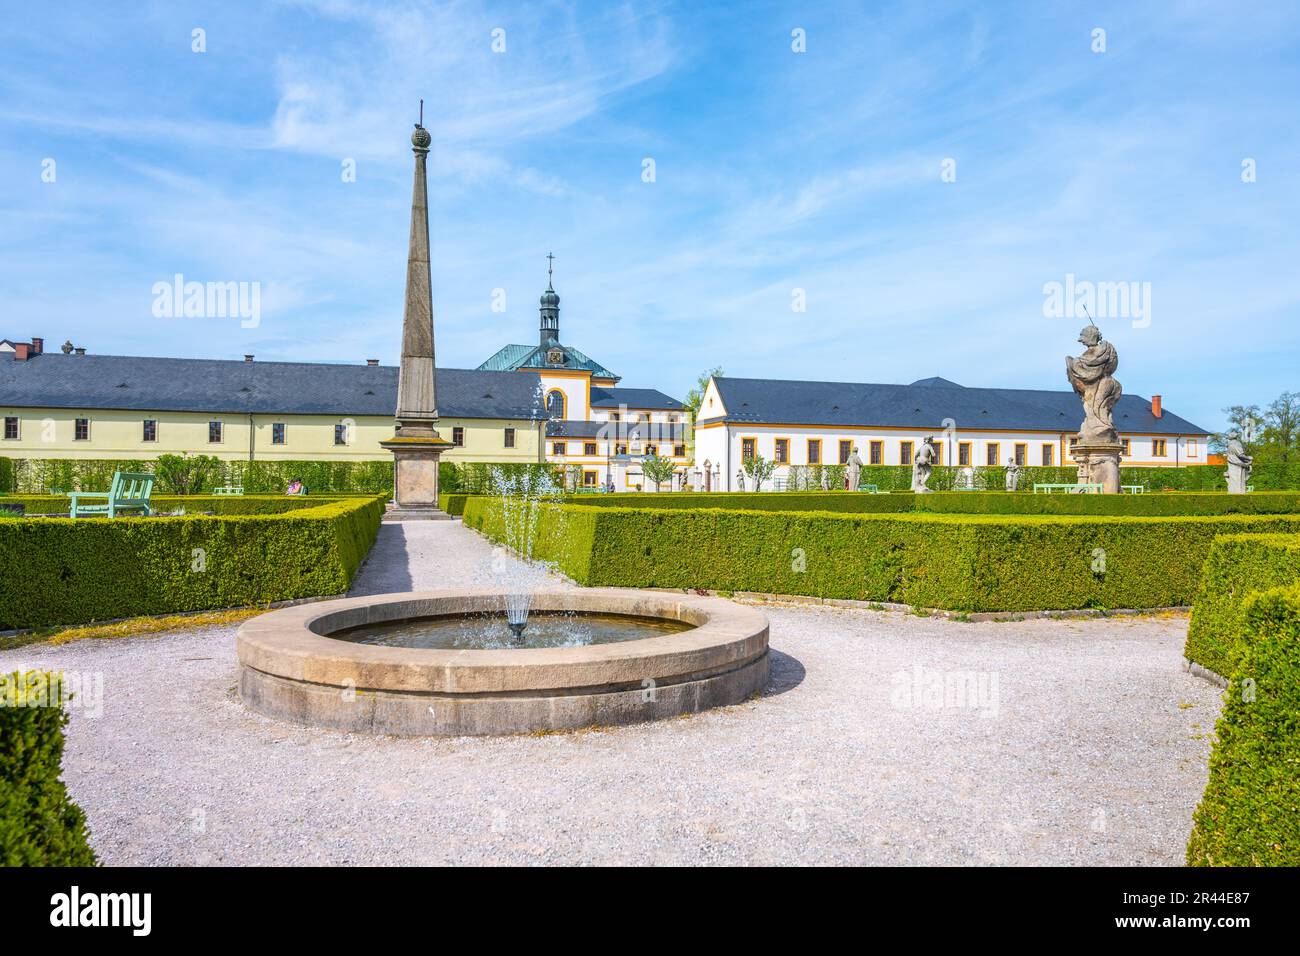 Jardins de plantes du complexe hospitalier baroque Kuks le jour d'été ensoleillé, République tchèque Banque D'Images